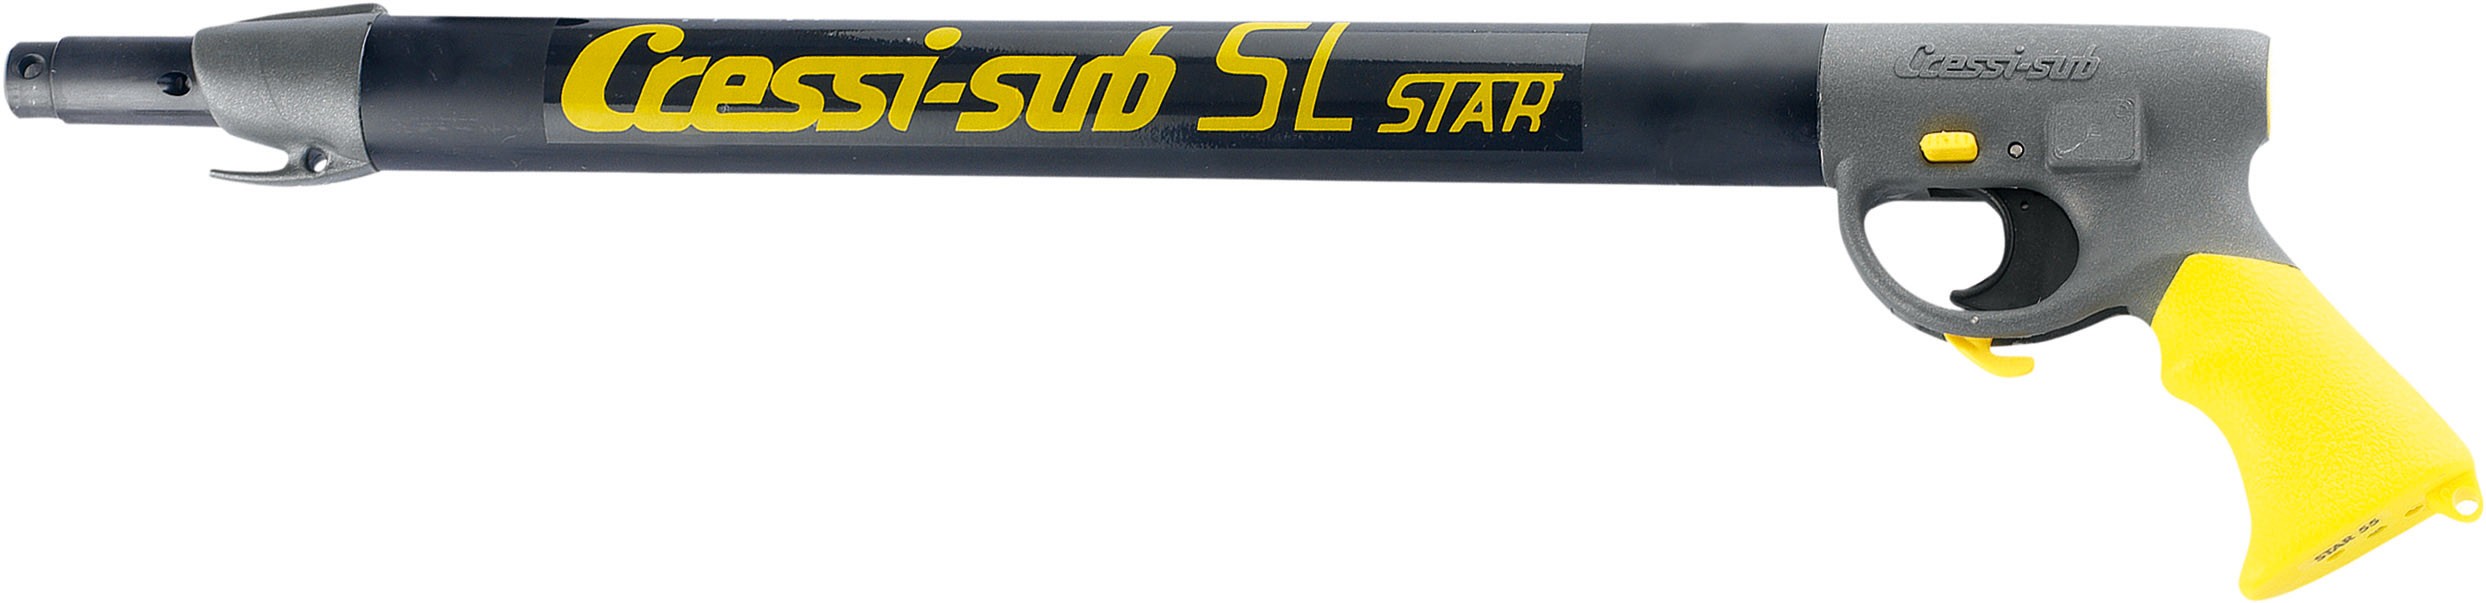 Cressi sl / star air spearguns